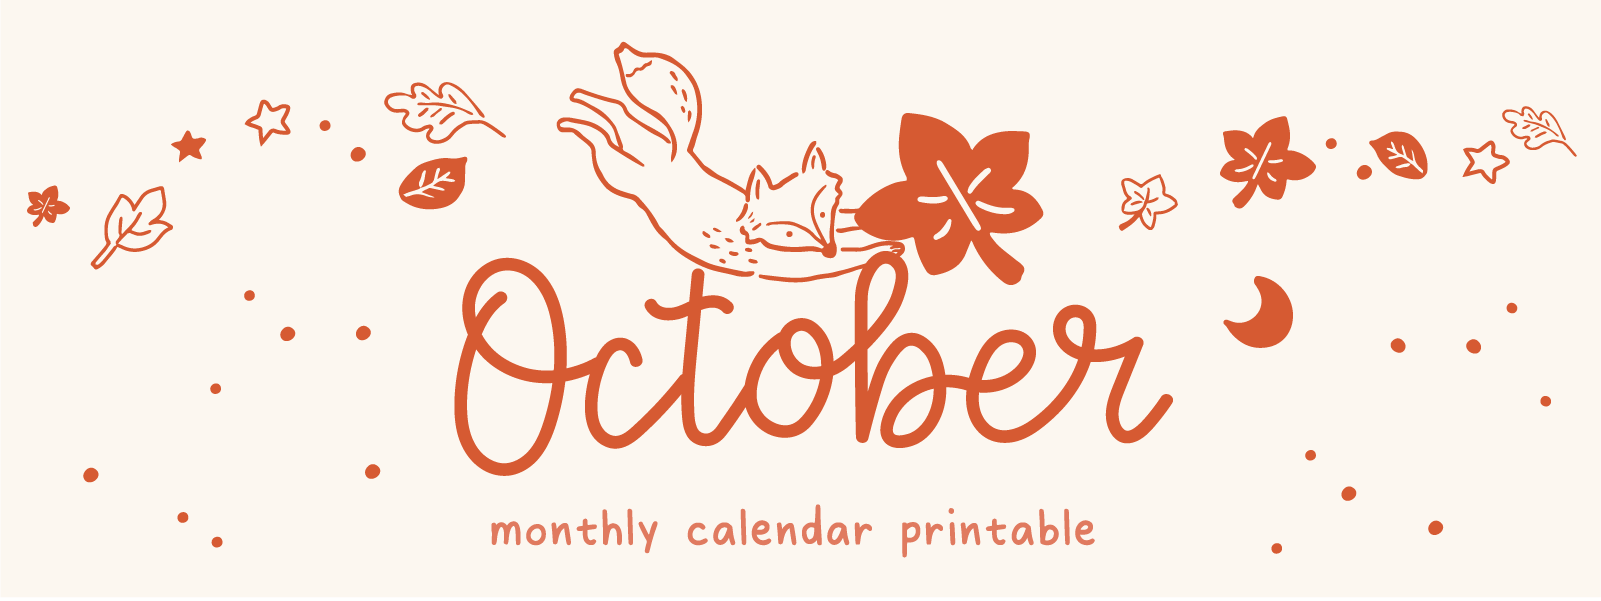 Monthly Calendar Spread Stencil, Journaling Supplies